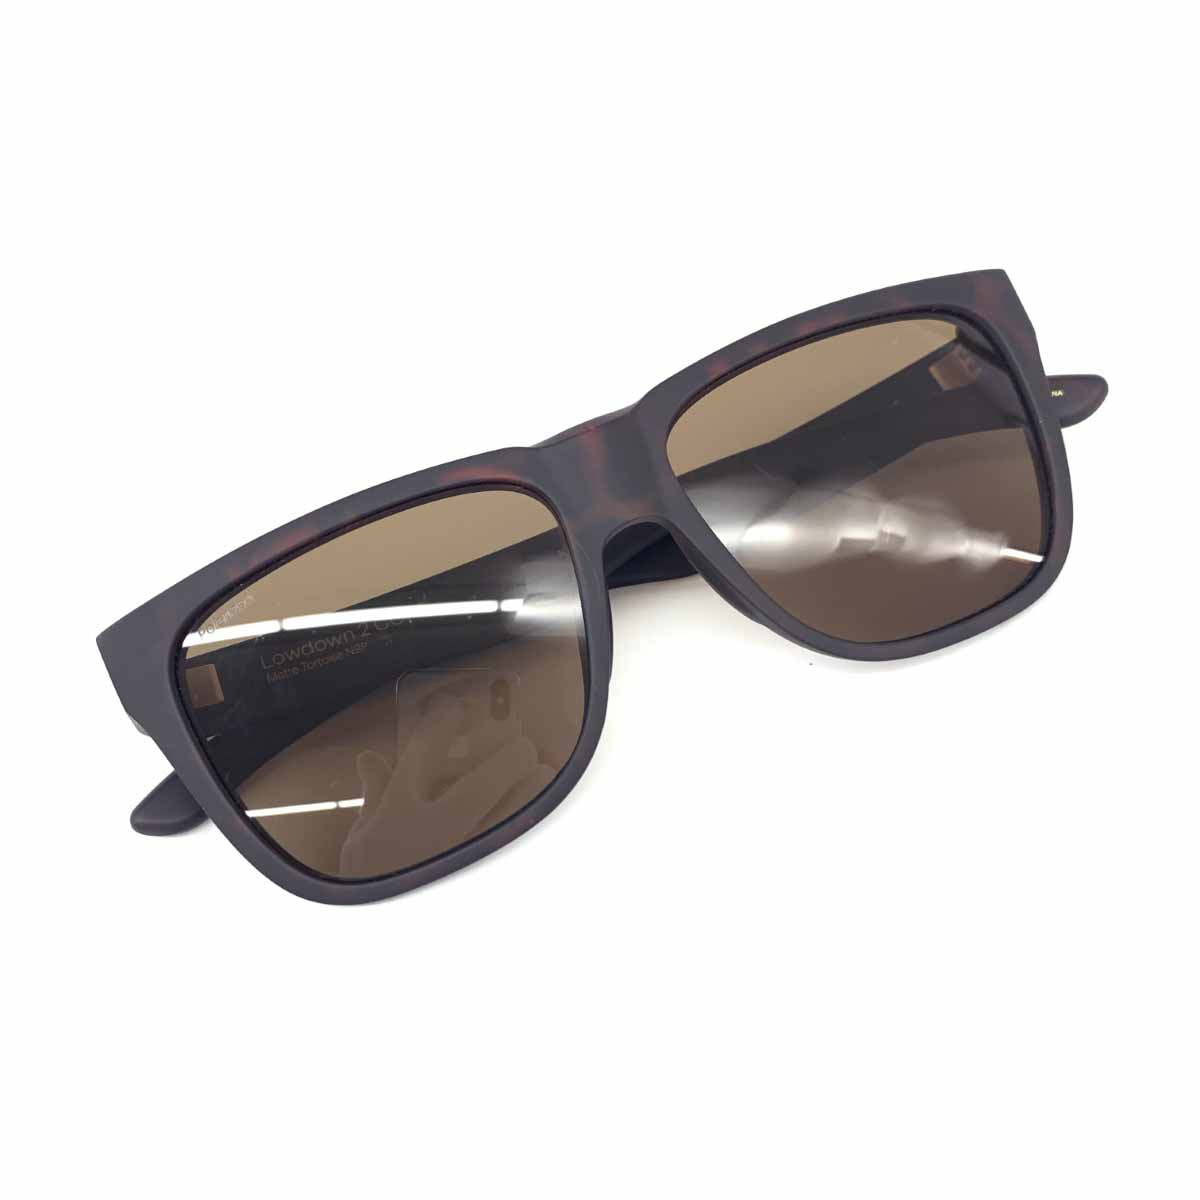 定番のお歳暮 良好 SMITH 服飾小物 sunglasses ユニセックス 偏光レンズ ボストン ブラウン サングラス CORE 2